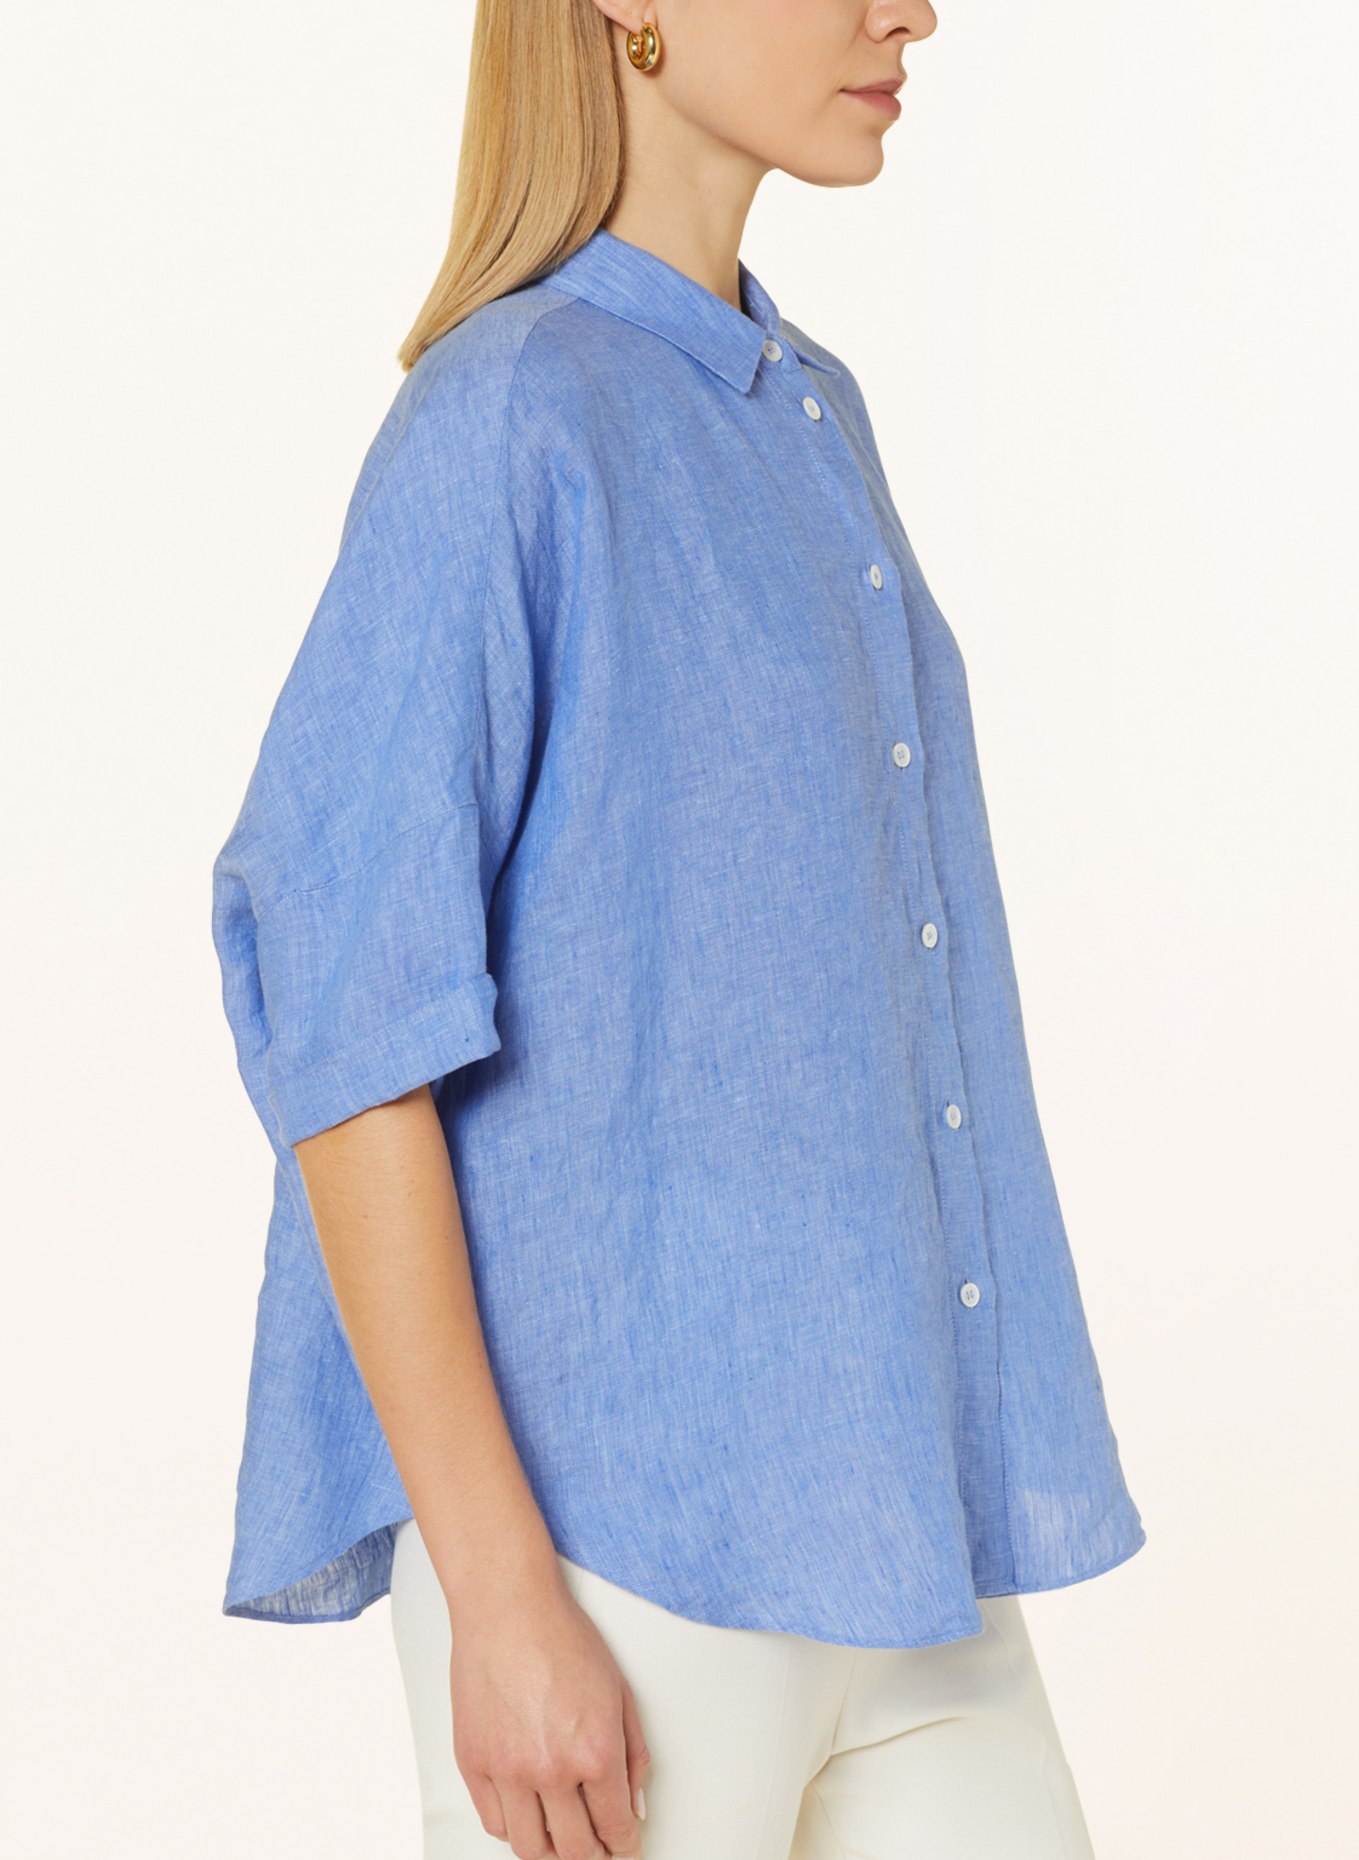 ROBERT FRIEDMAN Shirt blouse BIANCAL made of linen, Color: LIGHT BLUE (Image 4)